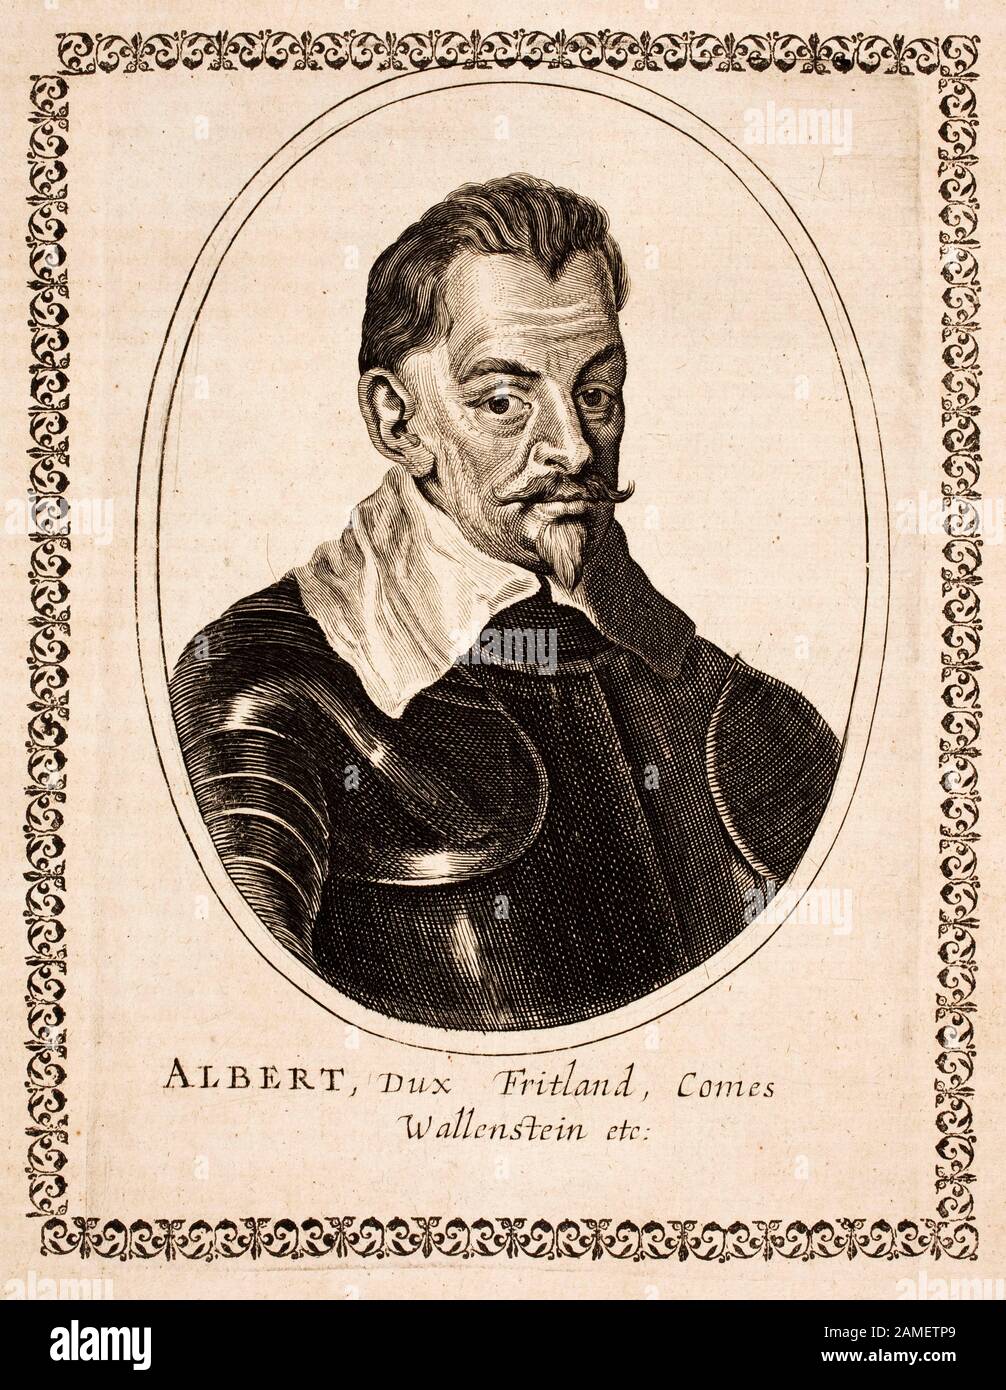 Porträt von Albrecht von Wallenstein (1583-1634), einem böhmischen Militärführer und Staatsmann, der während der Dreißigjährigen Wa auf der katholischen Seite kämpfte Stockfoto